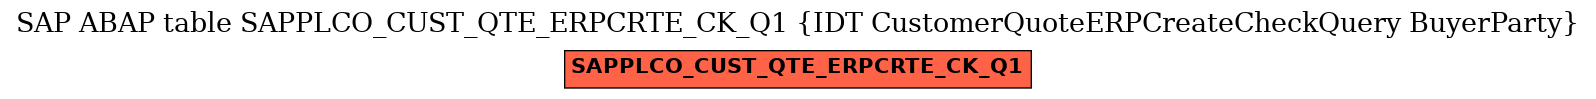 E-R Diagram for table SAPPLCO_CUST_QTE_ERPCRTE_CK_Q1 (IDT CustomerQuoteERPCreateCheckQuery BuyerParty)